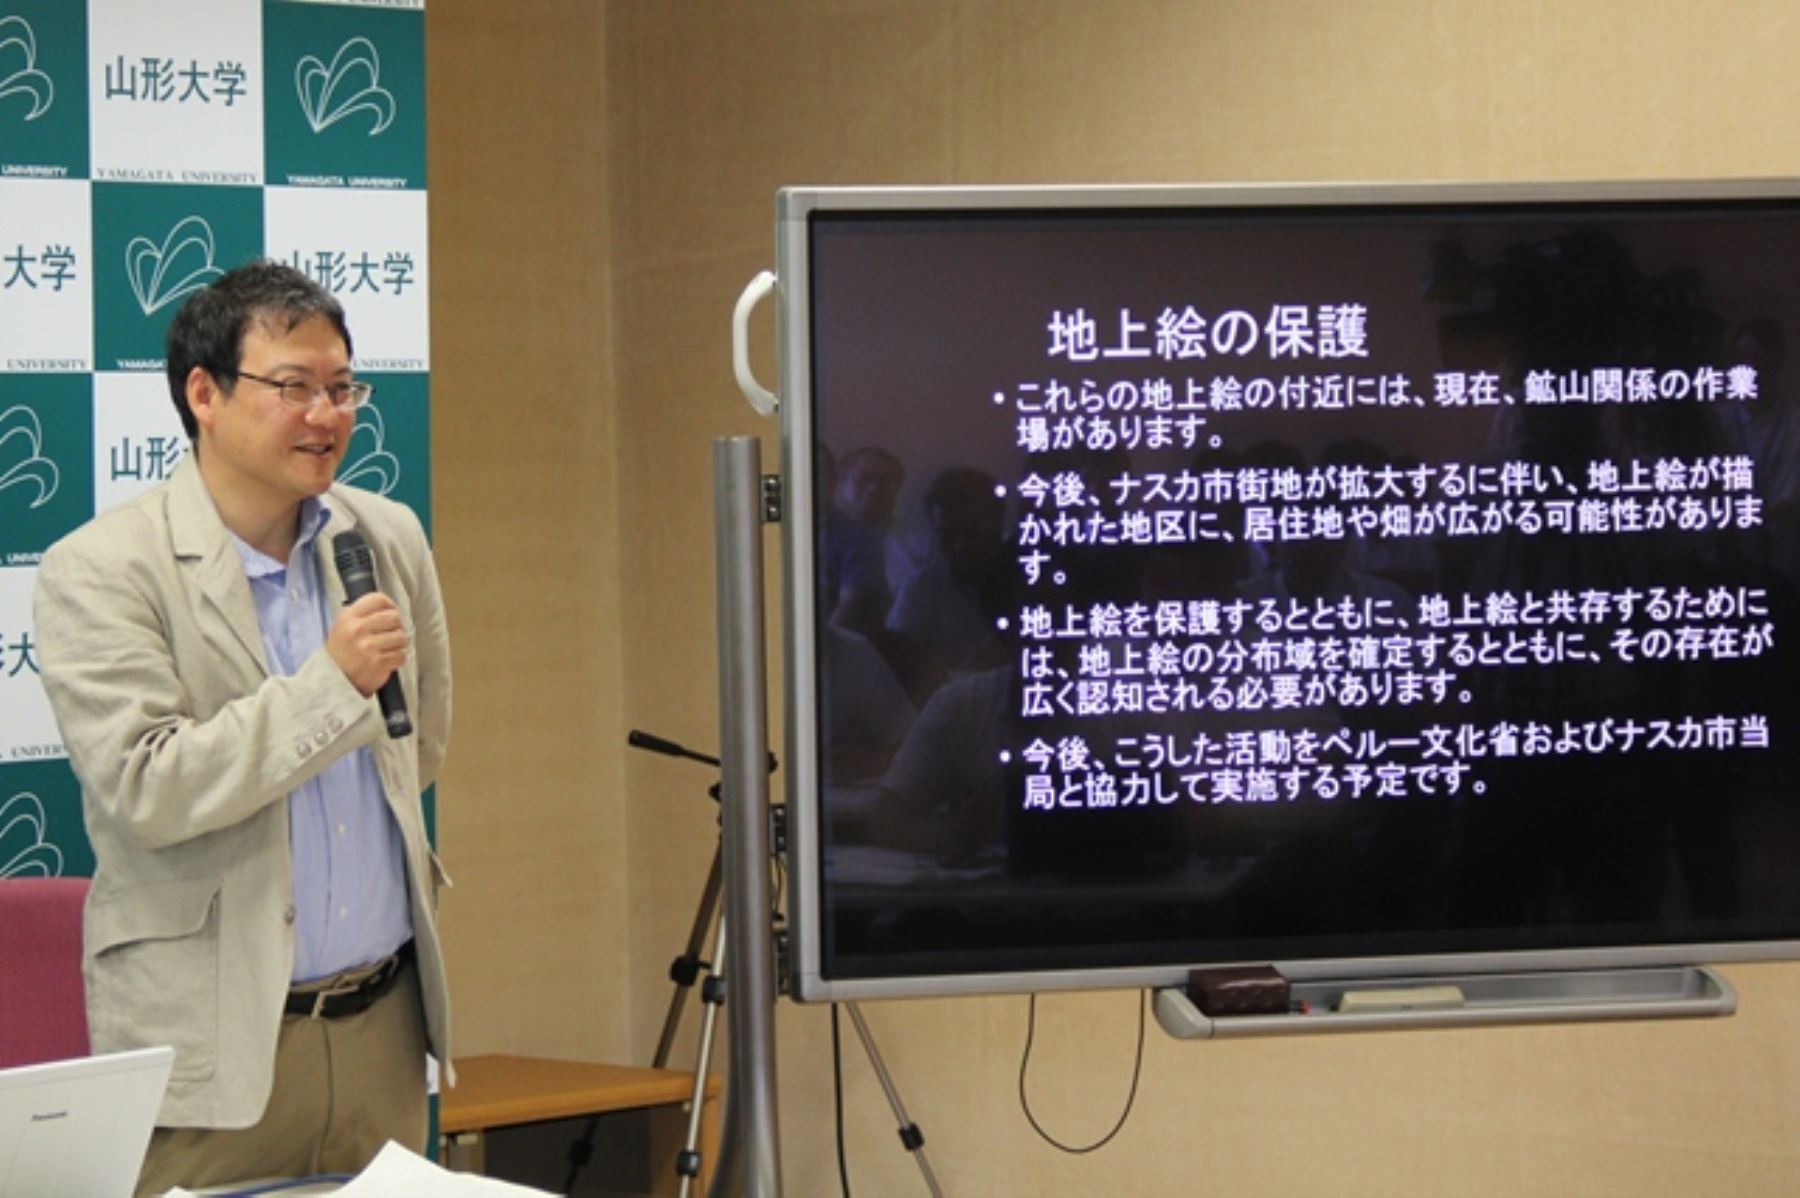 Arqueólogo japonés Masato Sakai es profesor de antropología cultural en la Universidad de Yamagata y director adjunto del Instituto de Investigación de la cultura Nasca en esa universidad, creado en 2012.